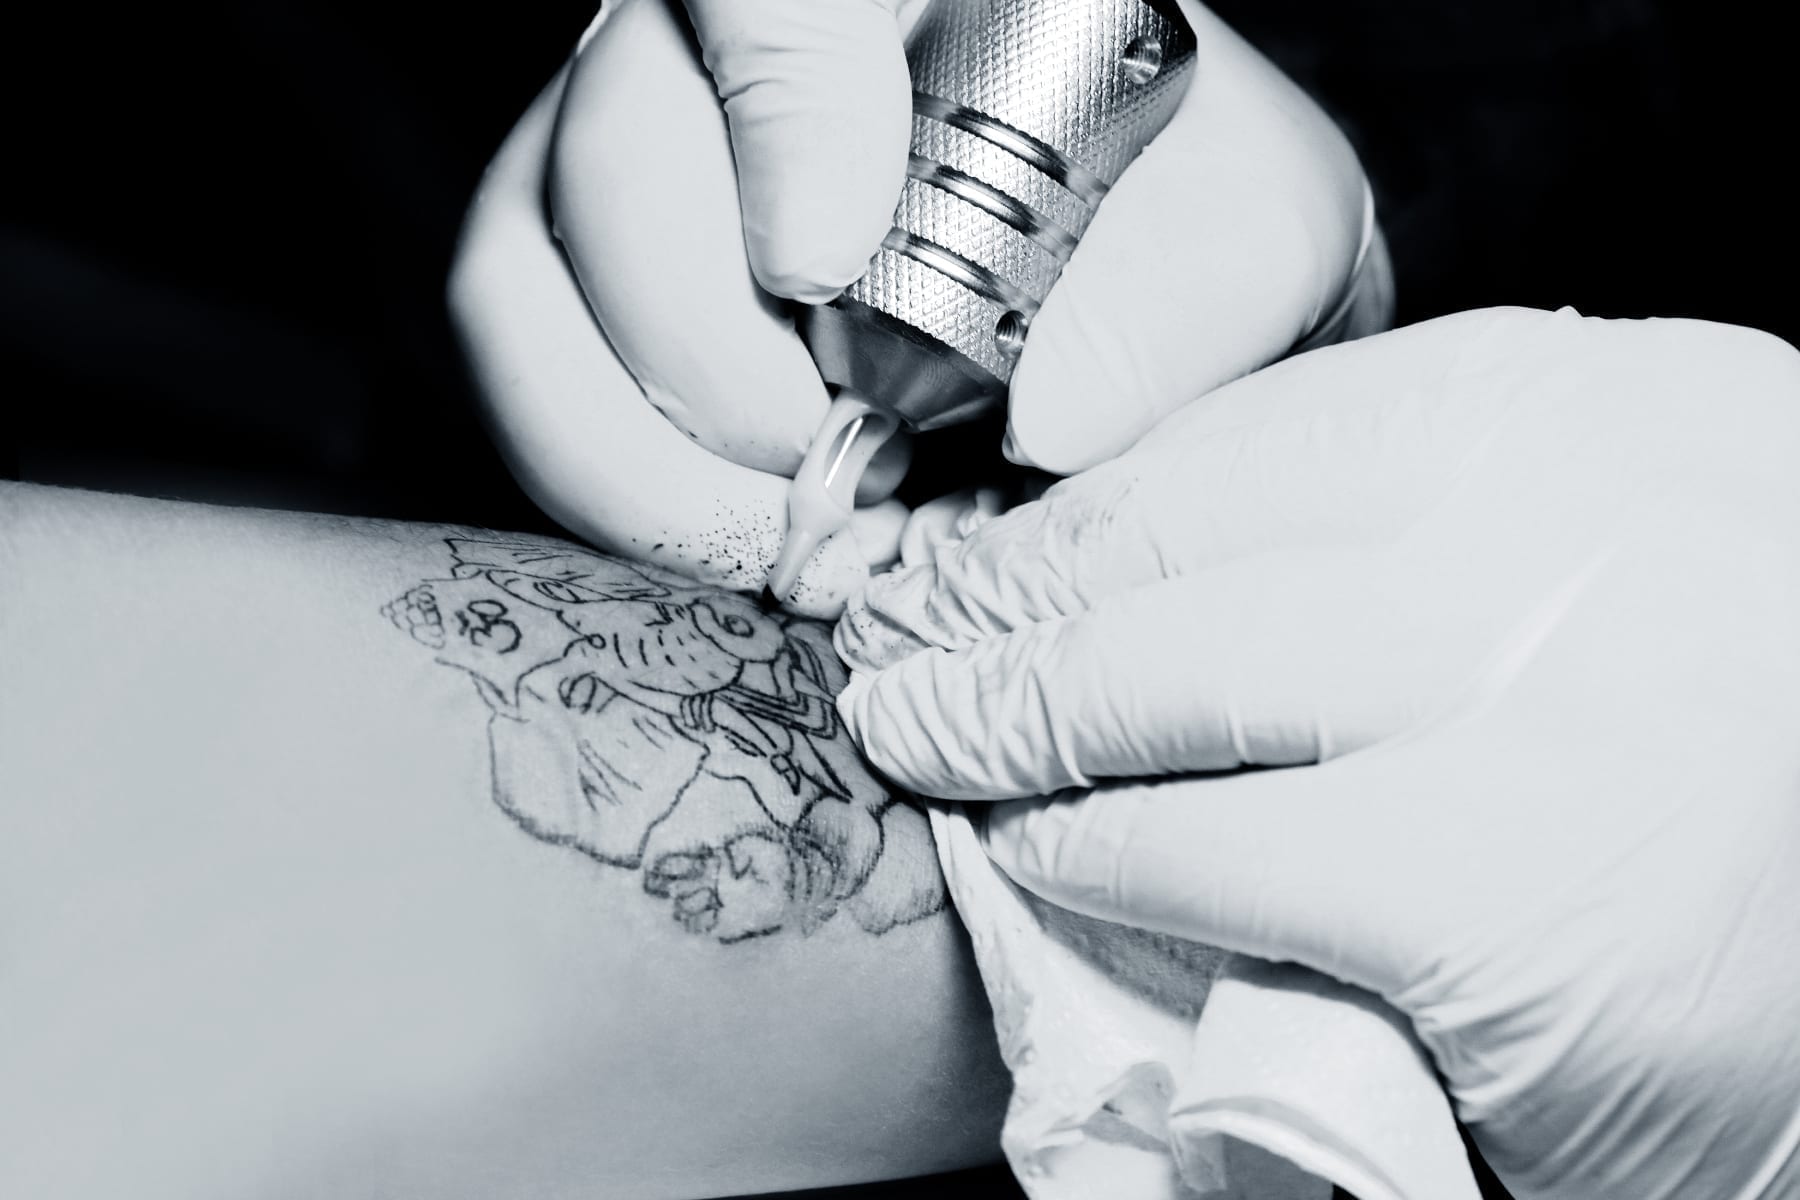 Researchers develop biosensing tattoo to help diabetics monitor sugar levels